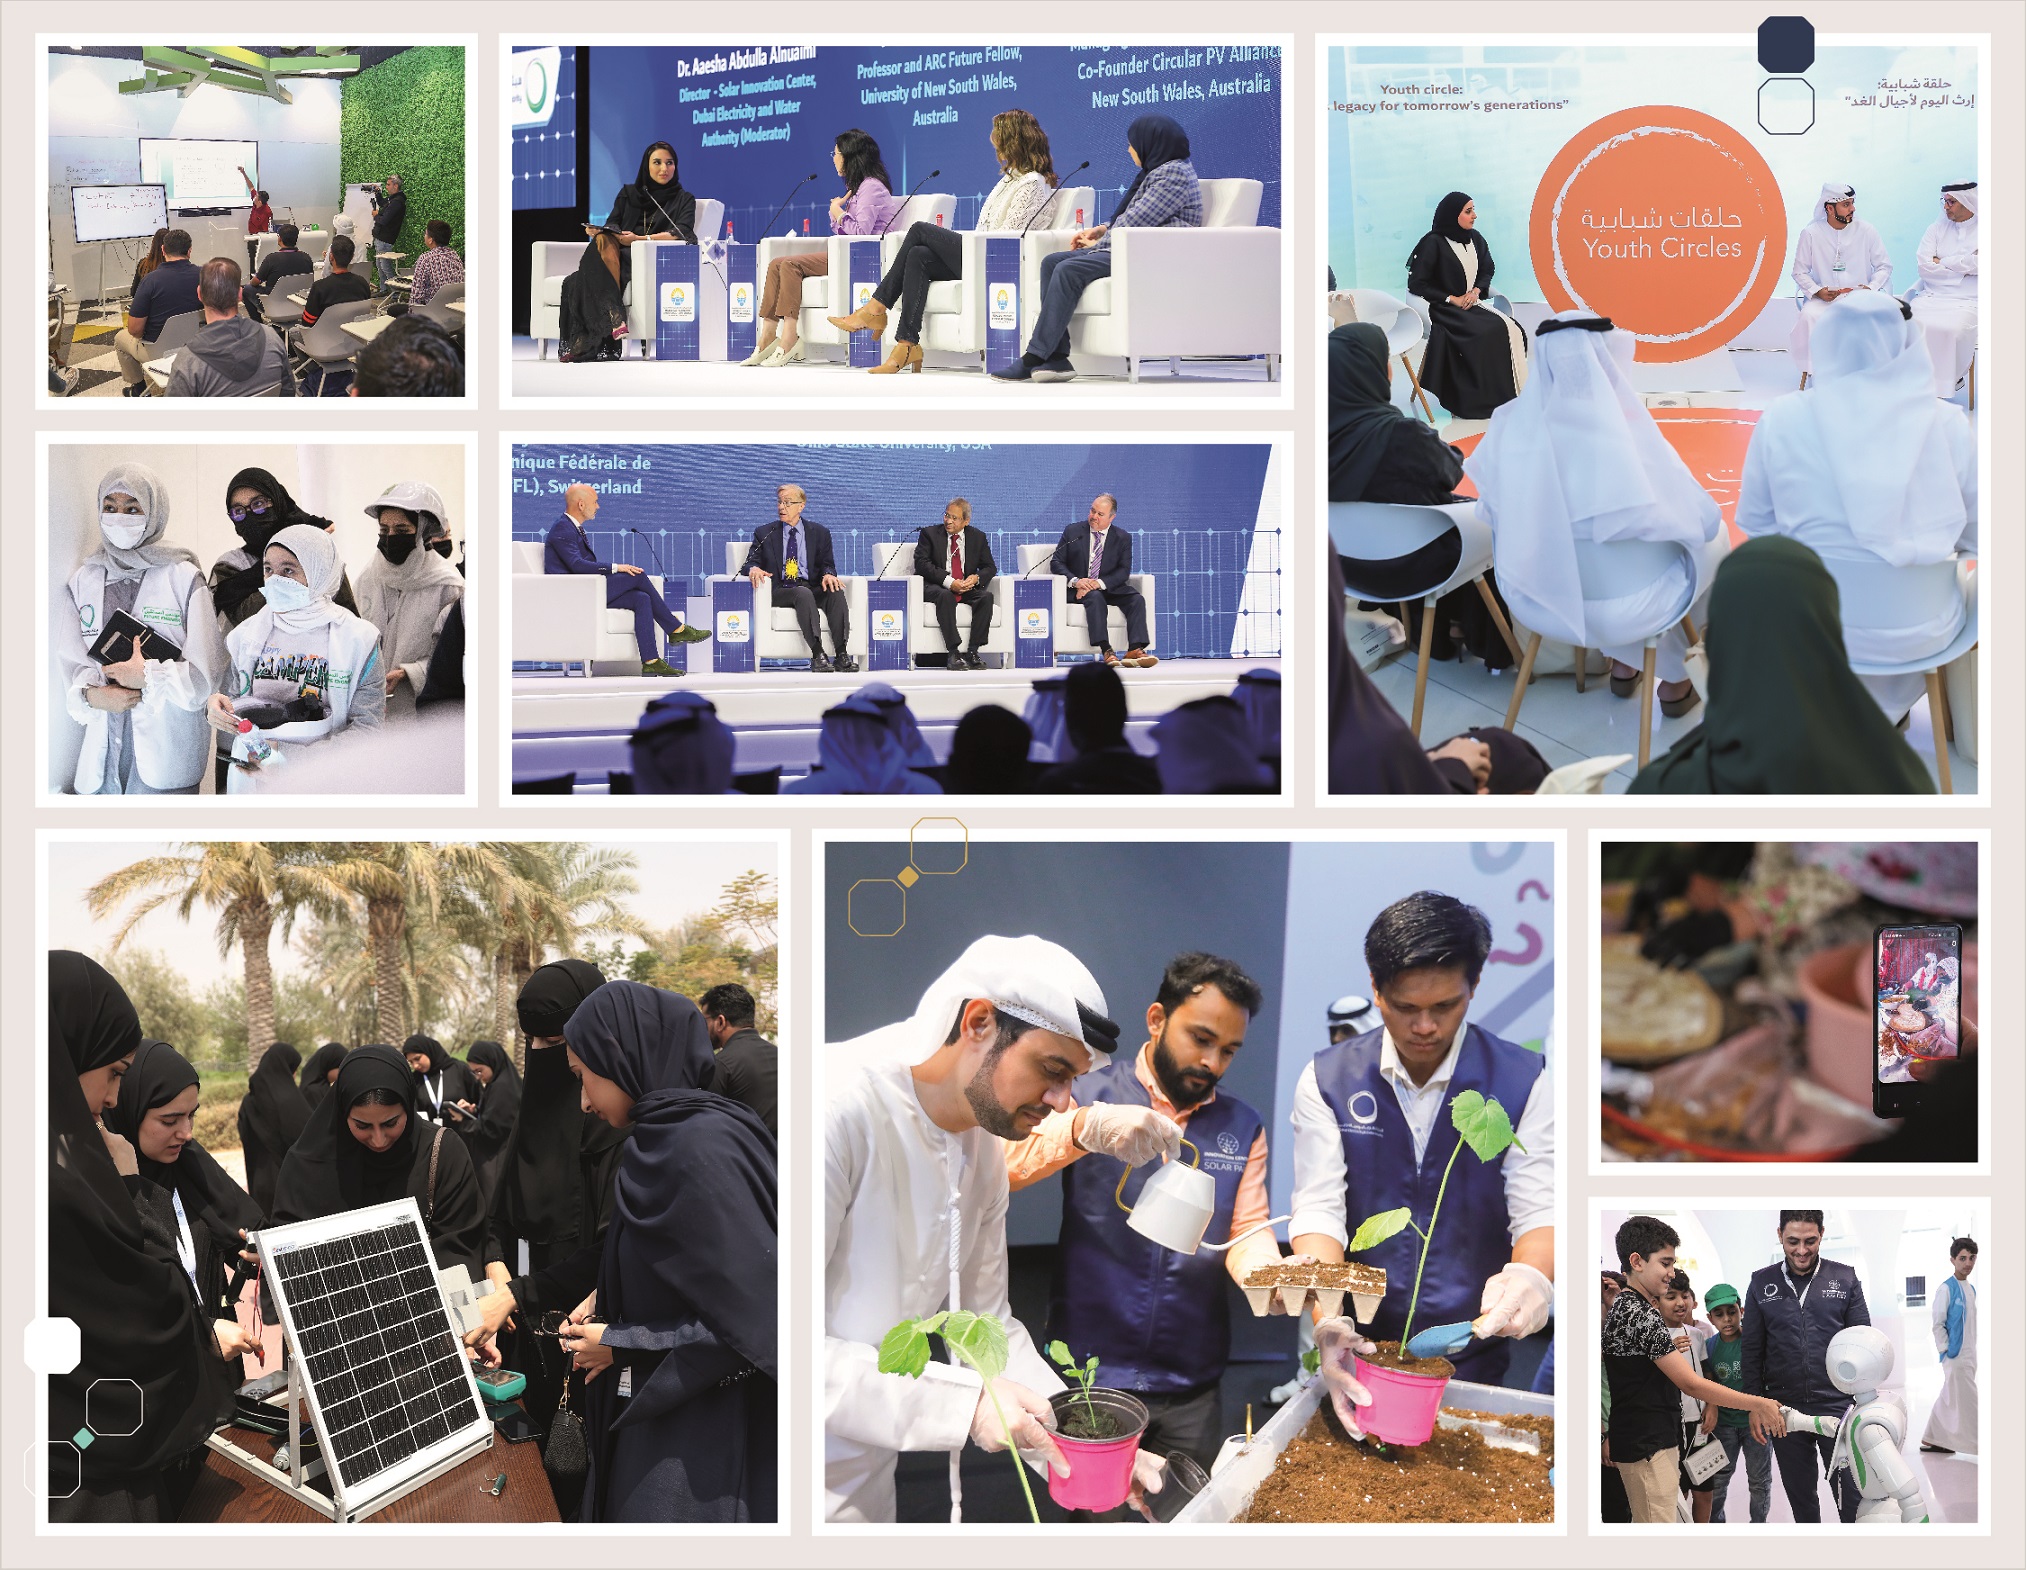 مركز الابتكار التابع لهيئة كهرباء ومياه دبي منصة عالمية رائدة لتشجيع الابتكار في مجالات الطاقة المتجددة والنظيفة